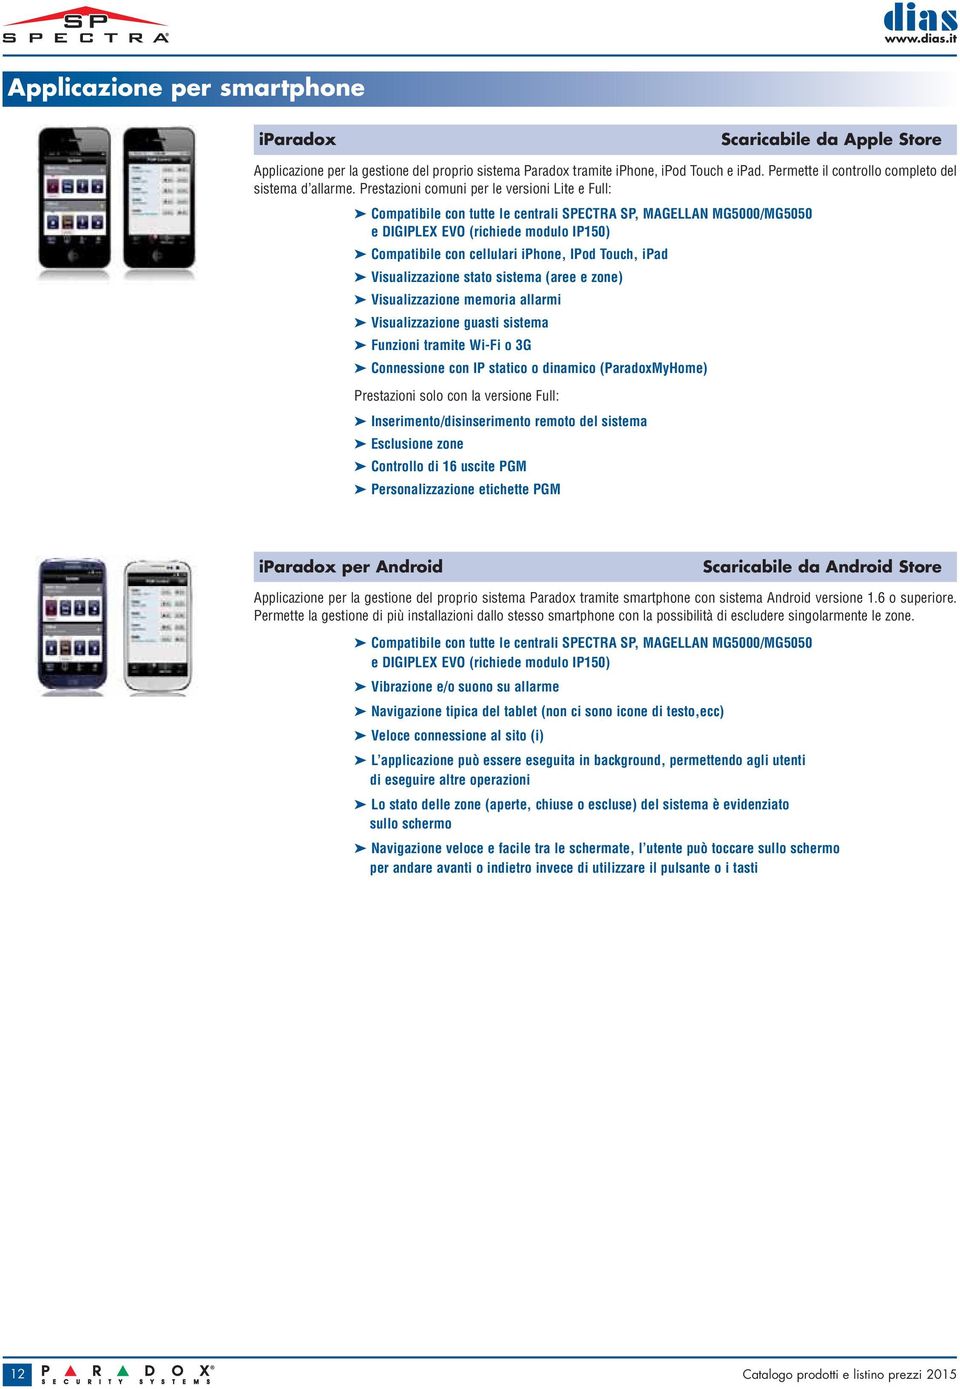 Prestazioni comuni per le versioni Lite e Full: Compatibile con tutte le centrali SPECTRA SP, MAGELLAN MG5000/MG5050 e DIGIPLEX EVO (richiede modulo IP150) Compatibile con cellulari iphone, IPod